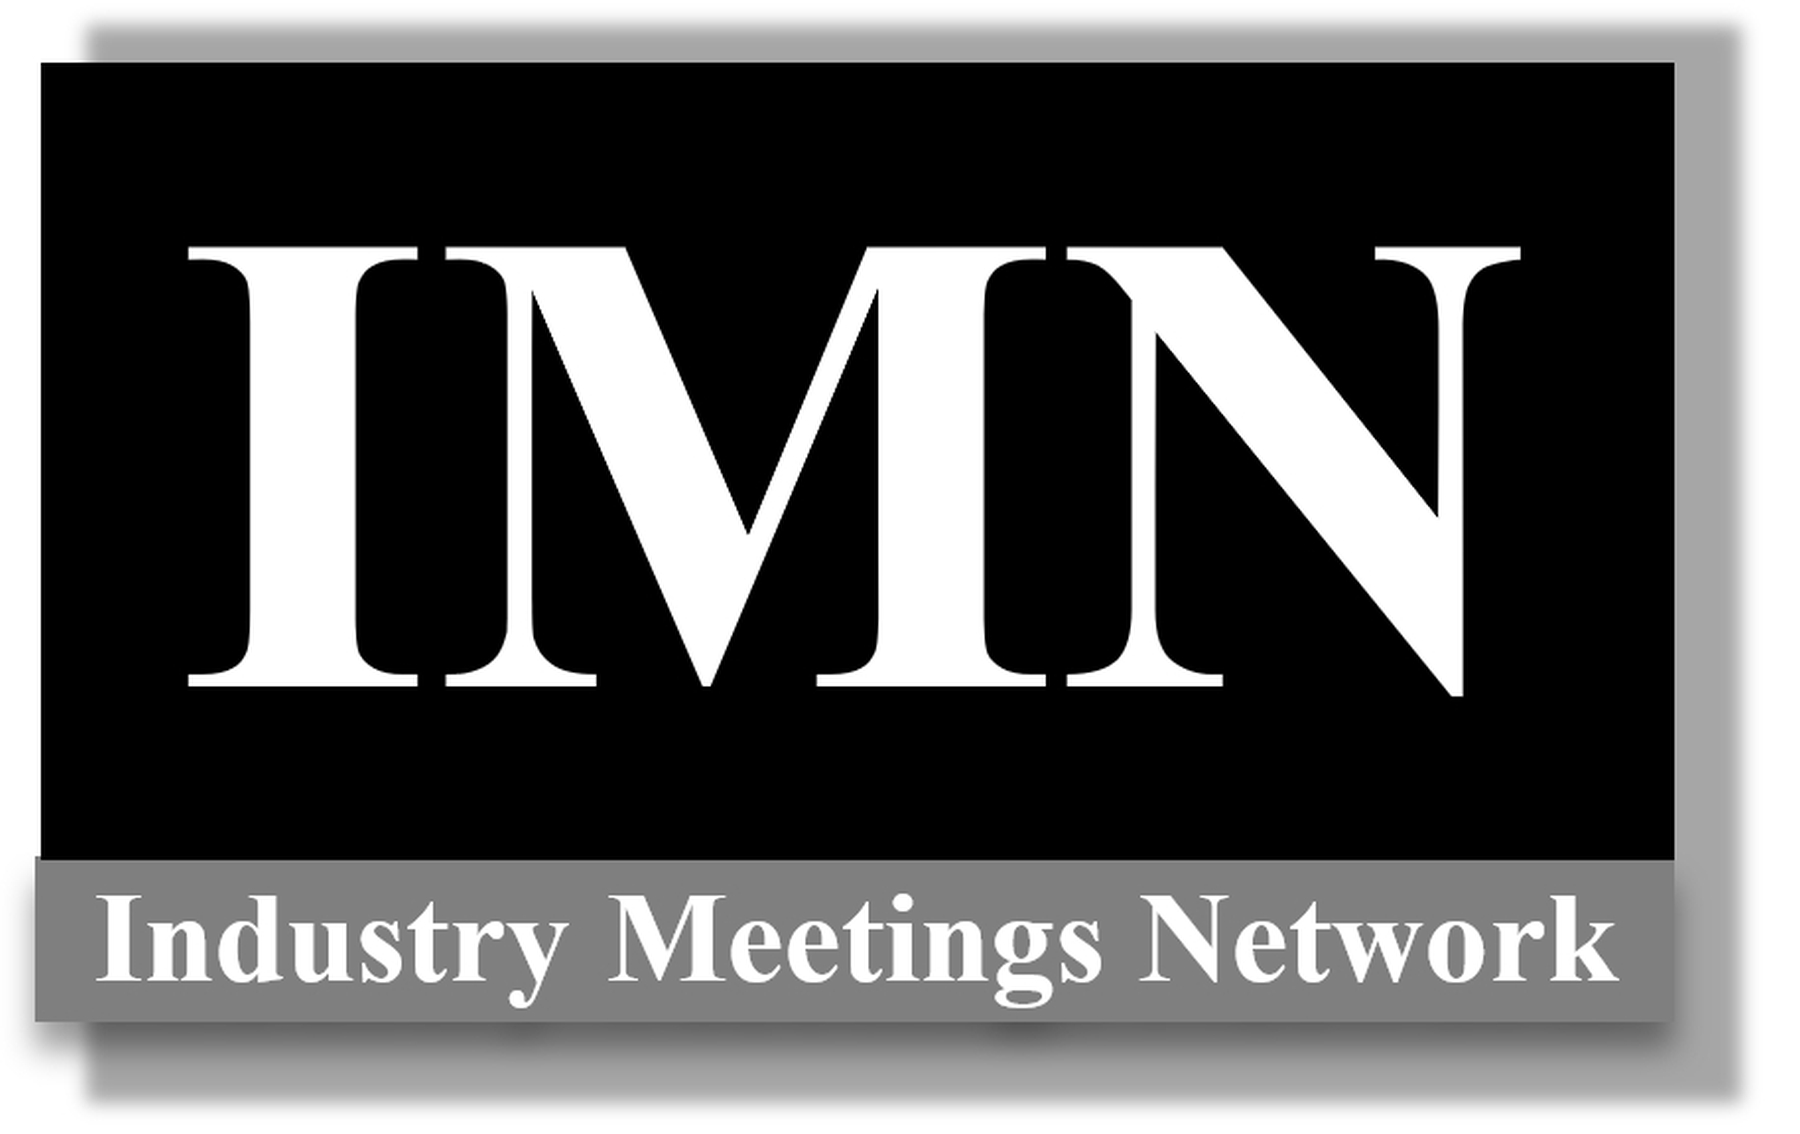 Industry Meetings Network